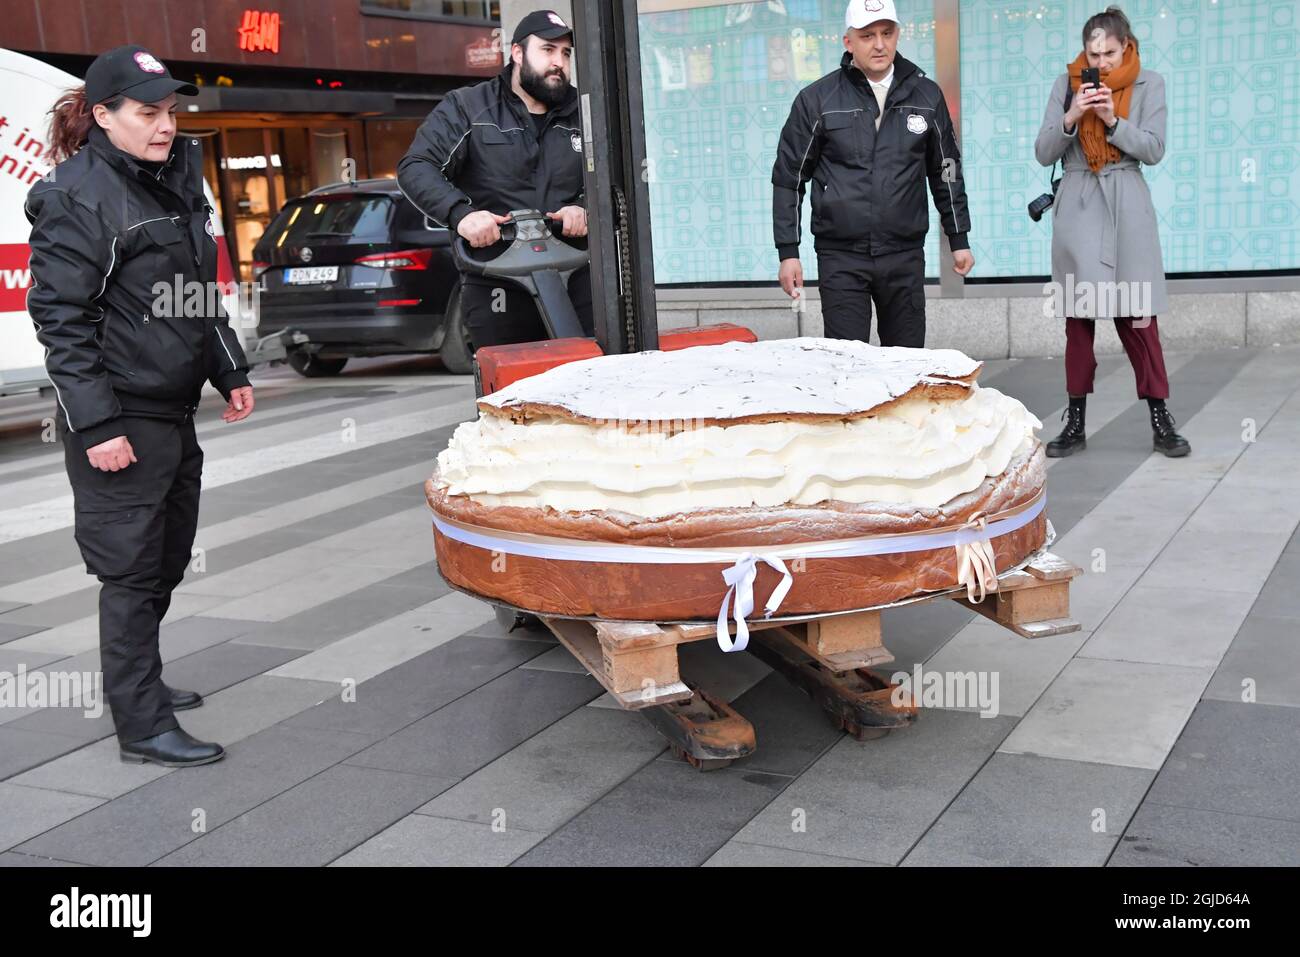 Die schwedische Bäckerei Bake My Day hat einen Guinness-Weltrekord aufgestellt, indem sie das größte Semla der Welt, ein schwedisches Rahmbrötchen, gebacken hat. Die Bäckerei verwendete 115 Liter Rahm, 30 kg Marzipan und 20 kg Puderzucker. Es wiegt 300 kg und hat 18 Stunden gebraucht, um es zu machen. Der Bäcker Daniel Granholm hält einen normal großen Semla in der Hand. Foto: Jonas Ekstromer / TT kod 10030 Stockfoto